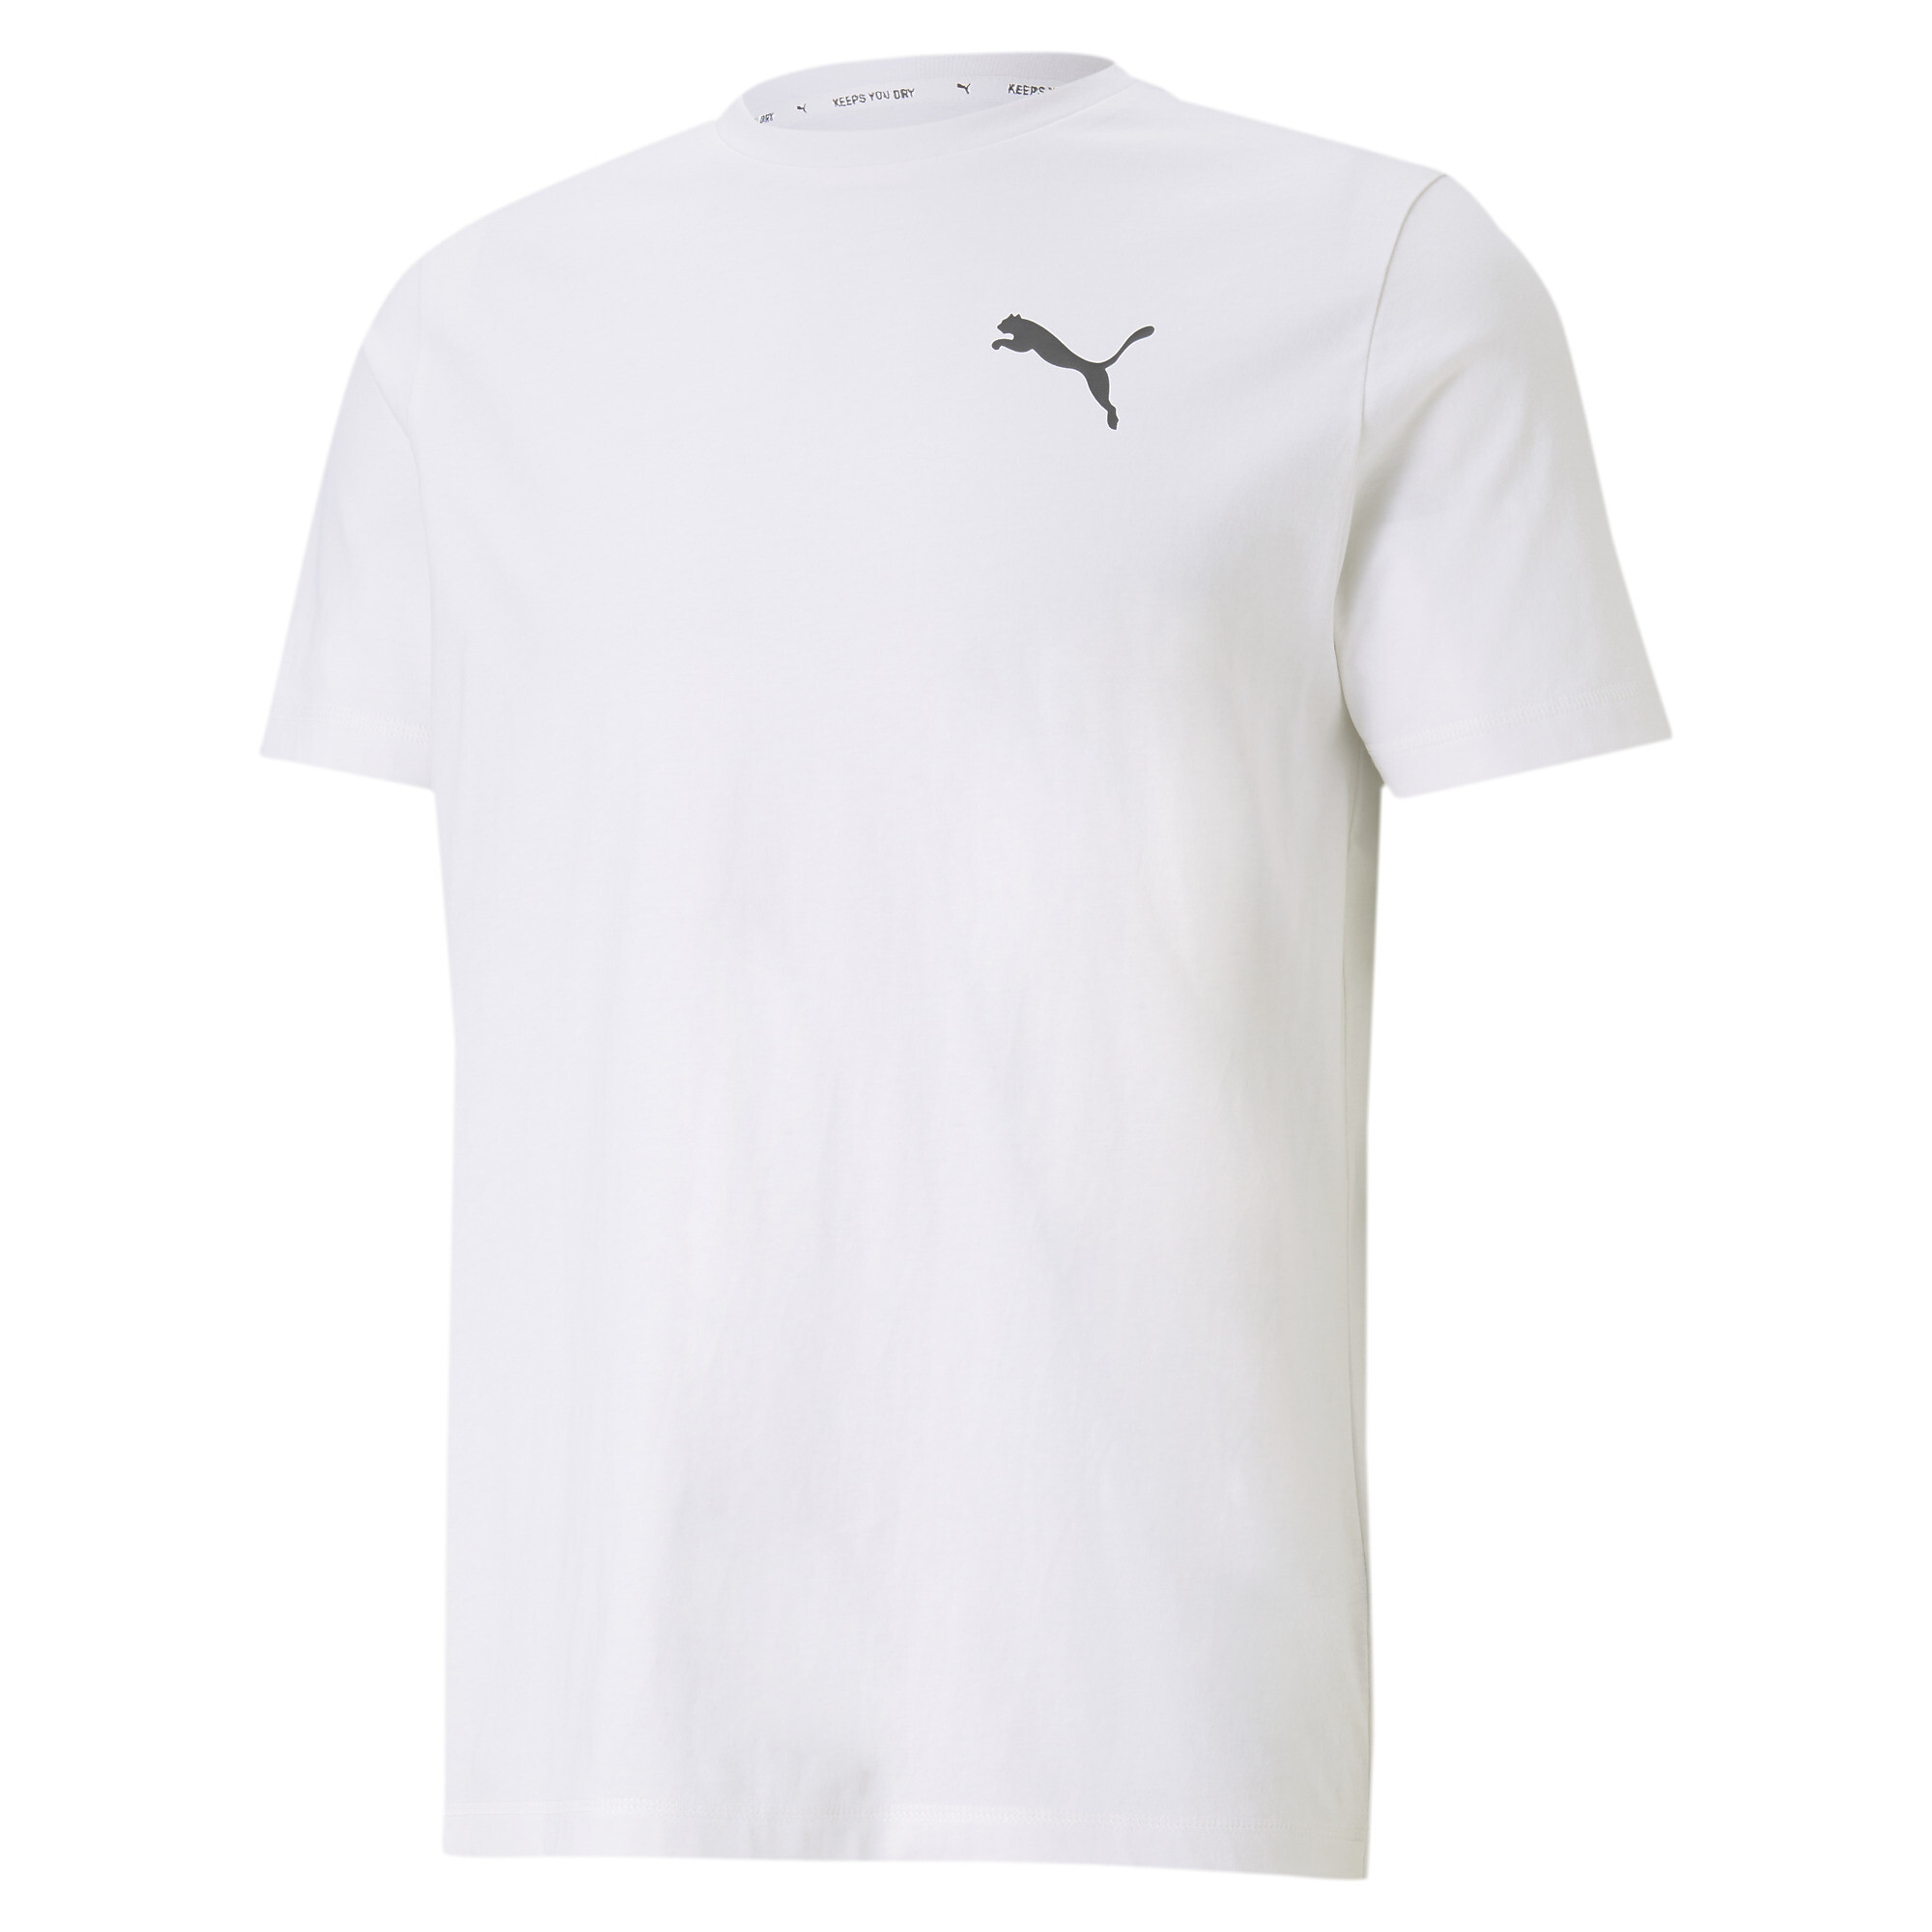  プーマ メンズ ACTIVE ソフト 半袖 Tシャツ メンズ Puma White ｜PUMA.com